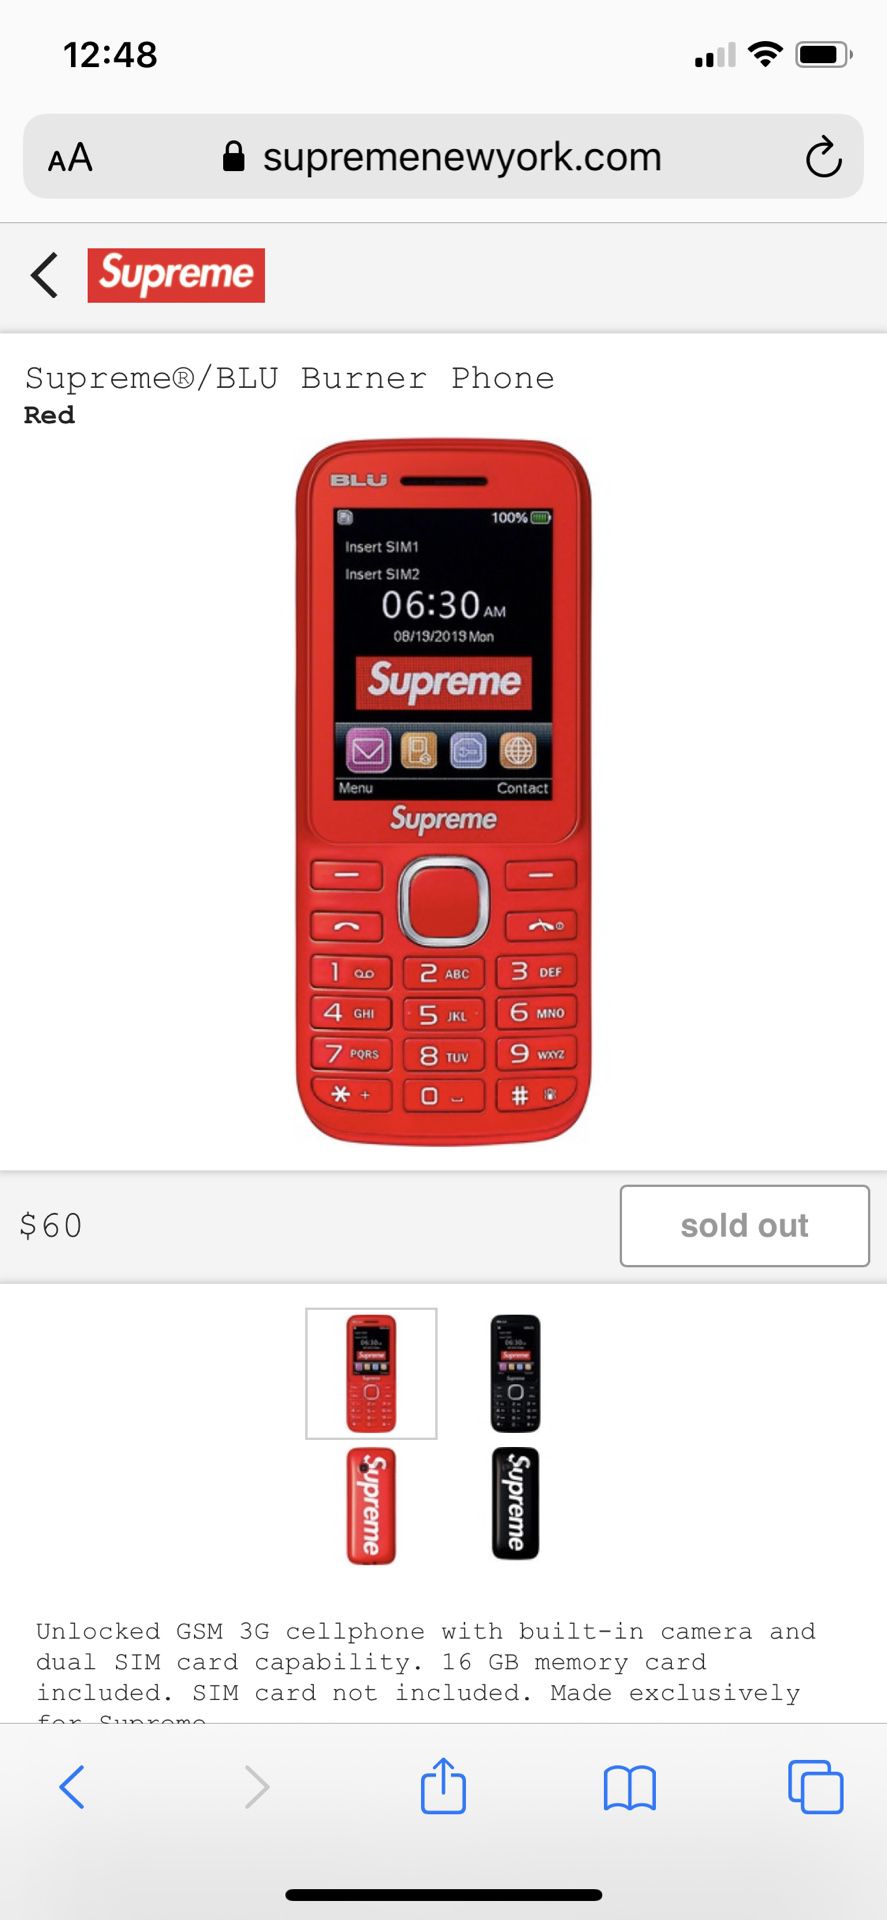 Supreme Burner Phone - Red *confirmed order